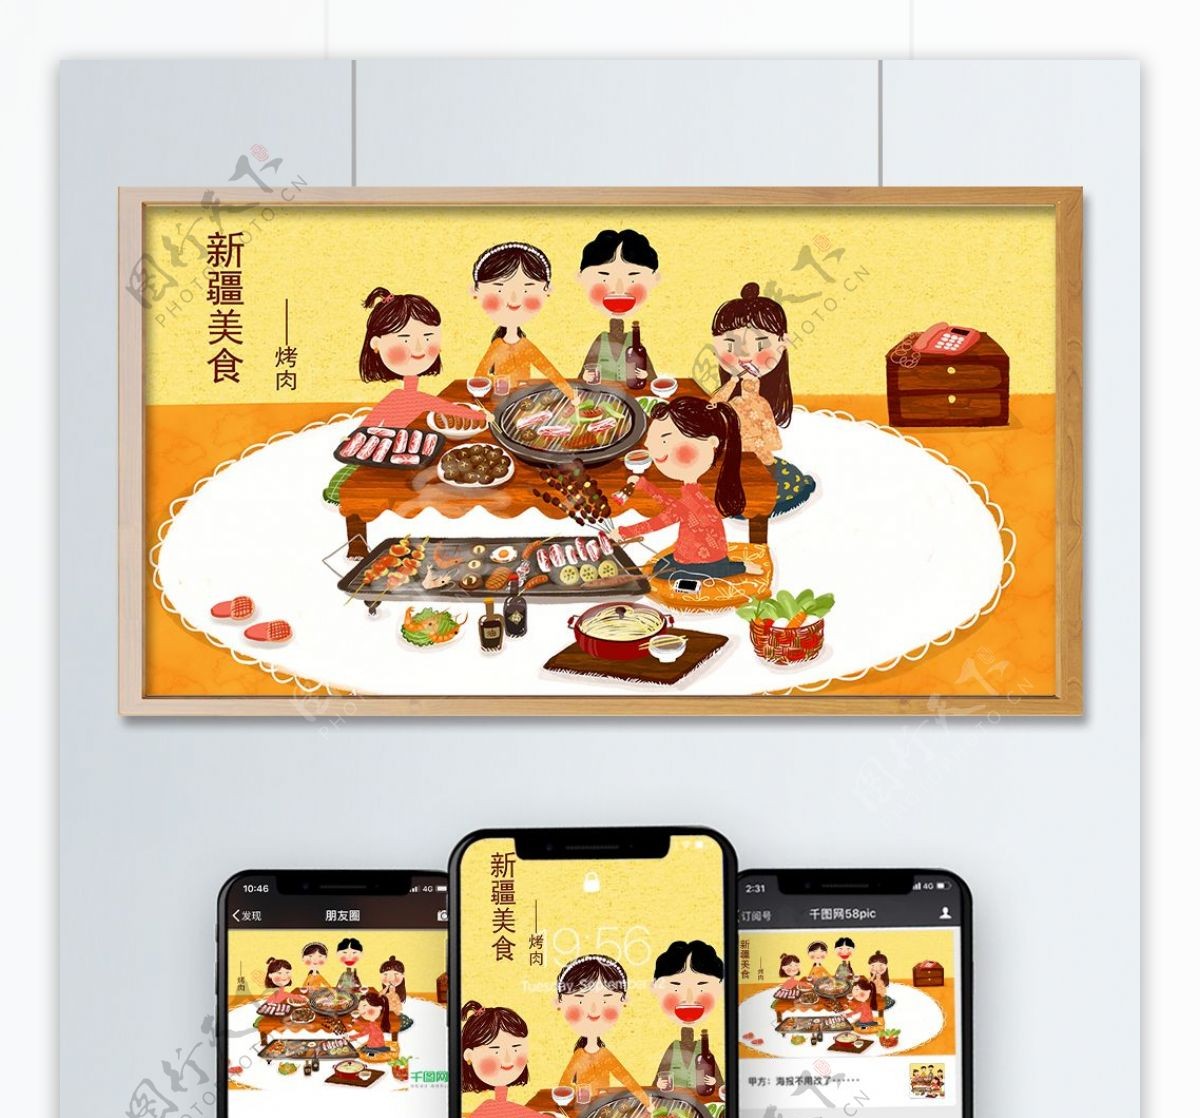 原创小清新插画中国传统地方美食之新疆烤肉